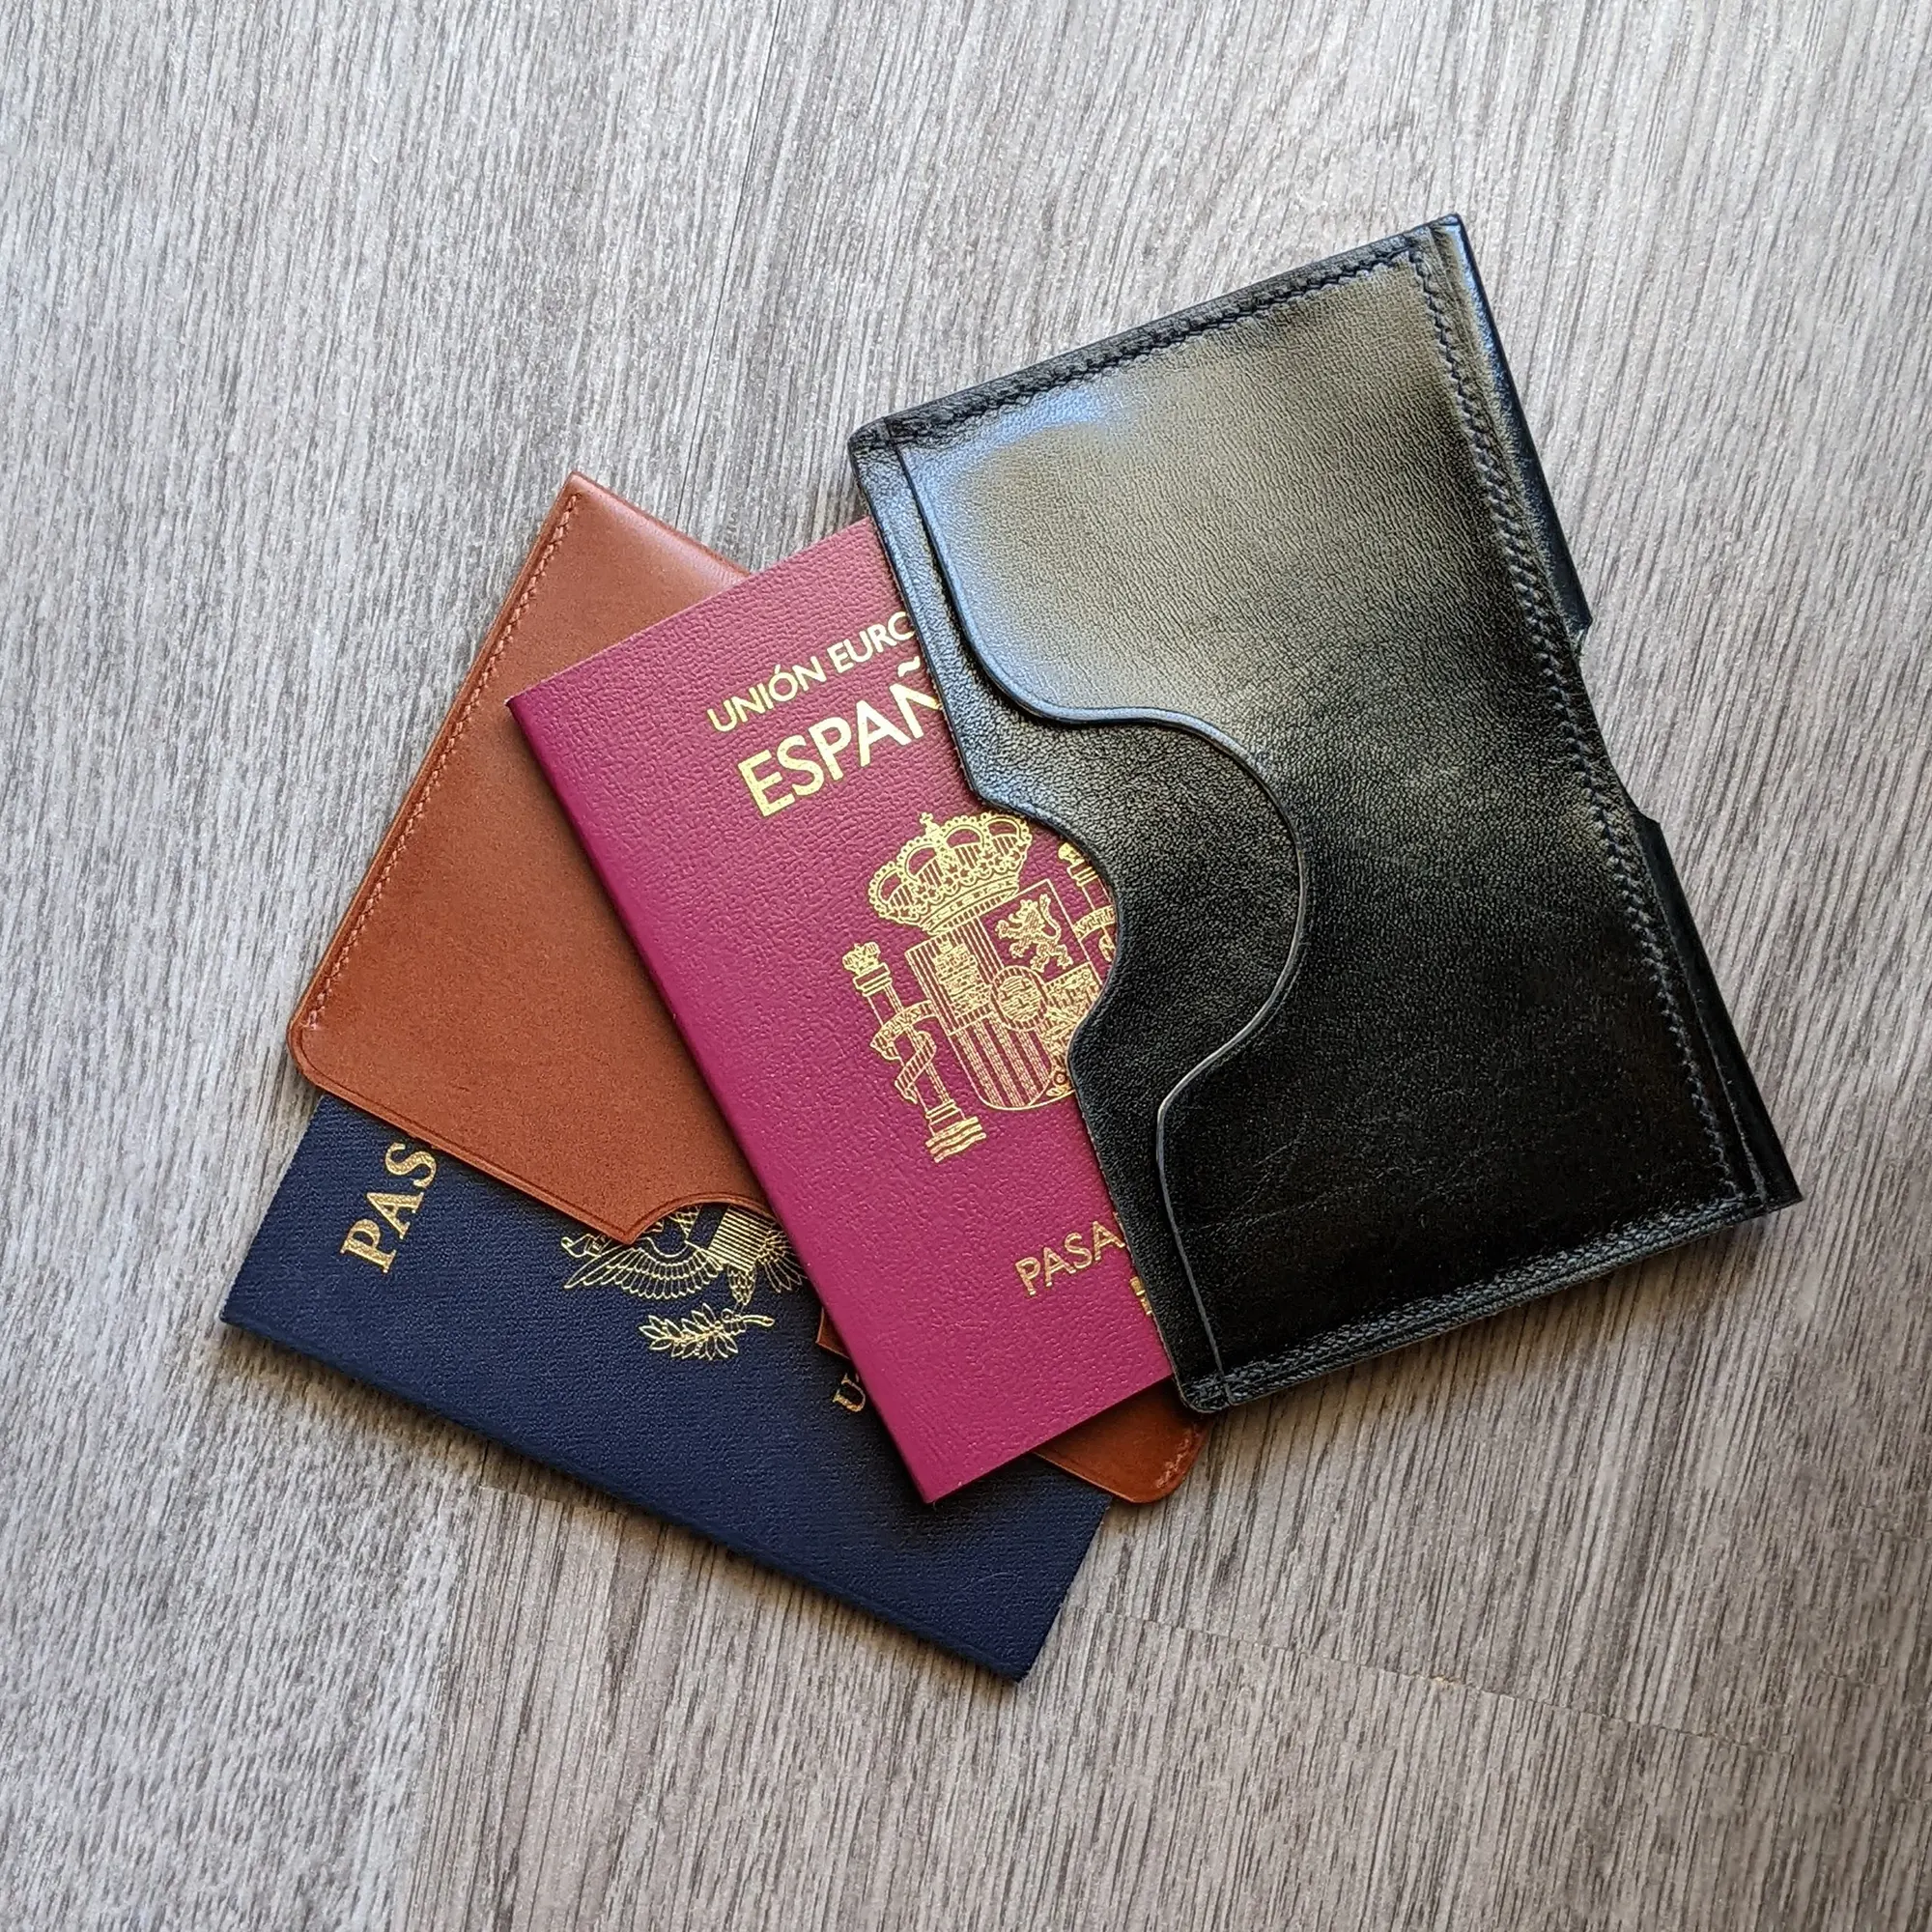 possala designs handmade passport wallet